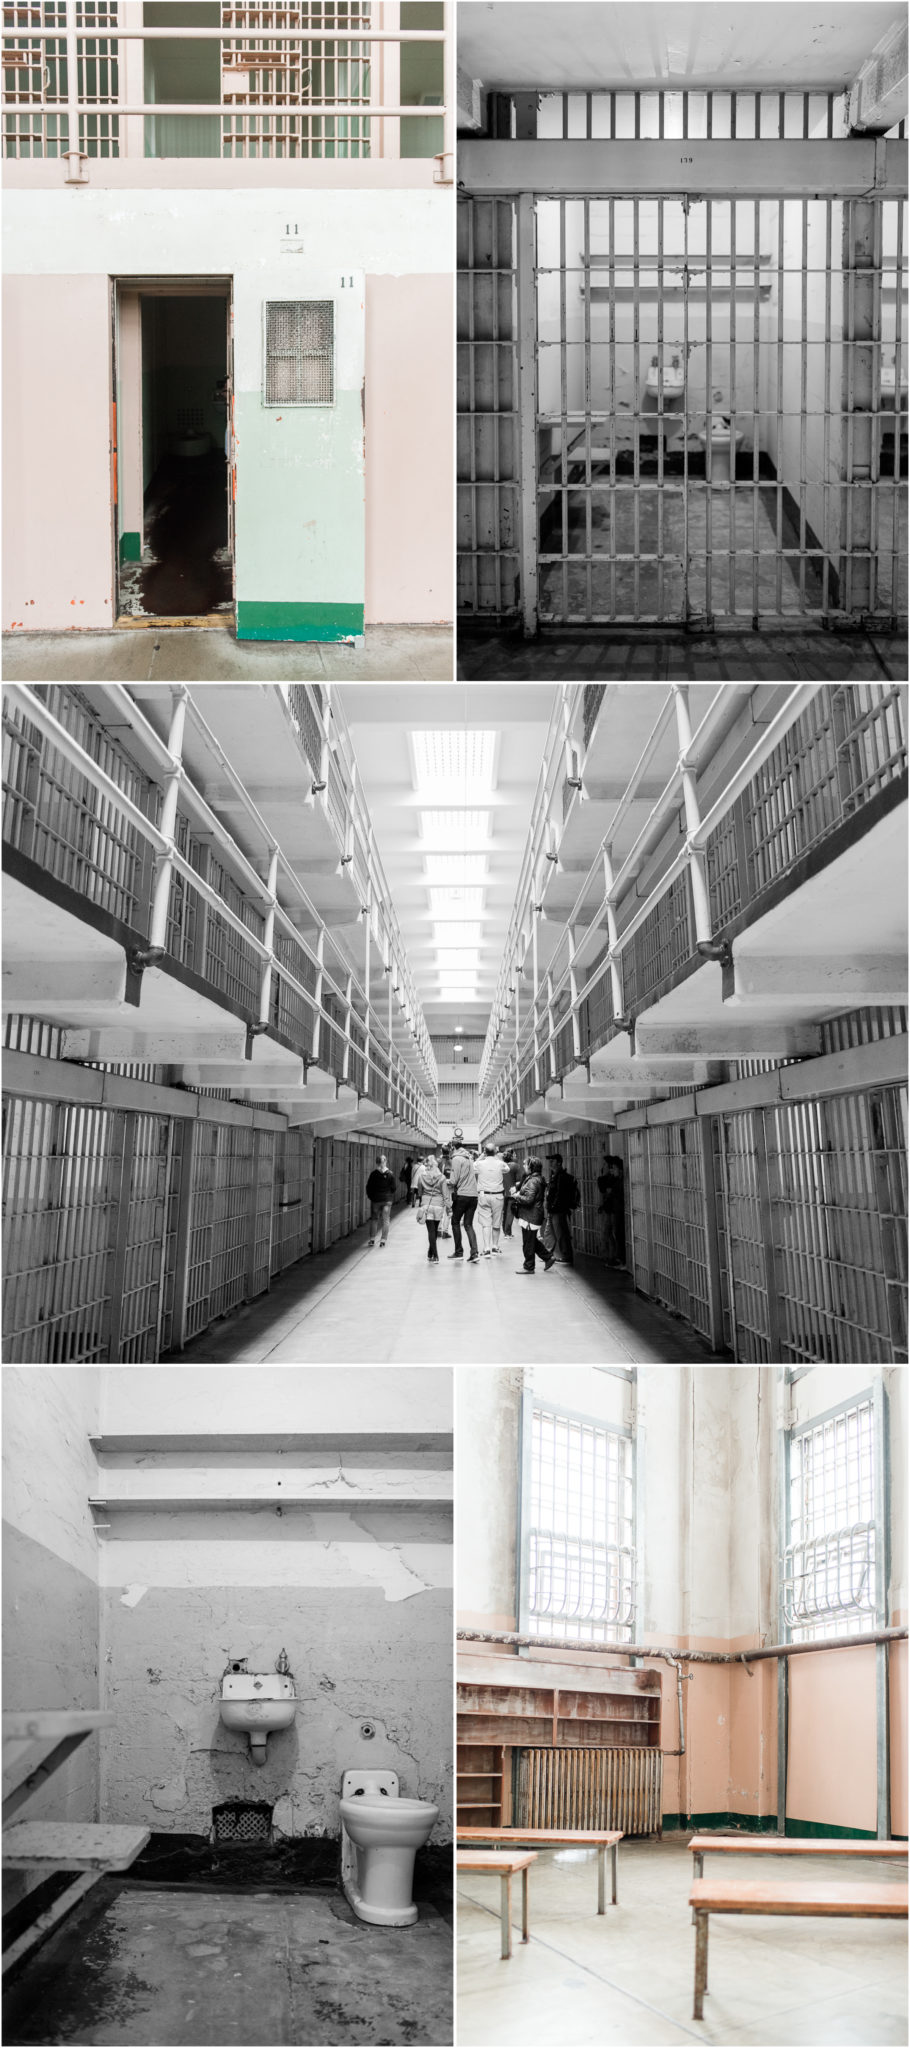 Alcatraz Federal Penitentiary